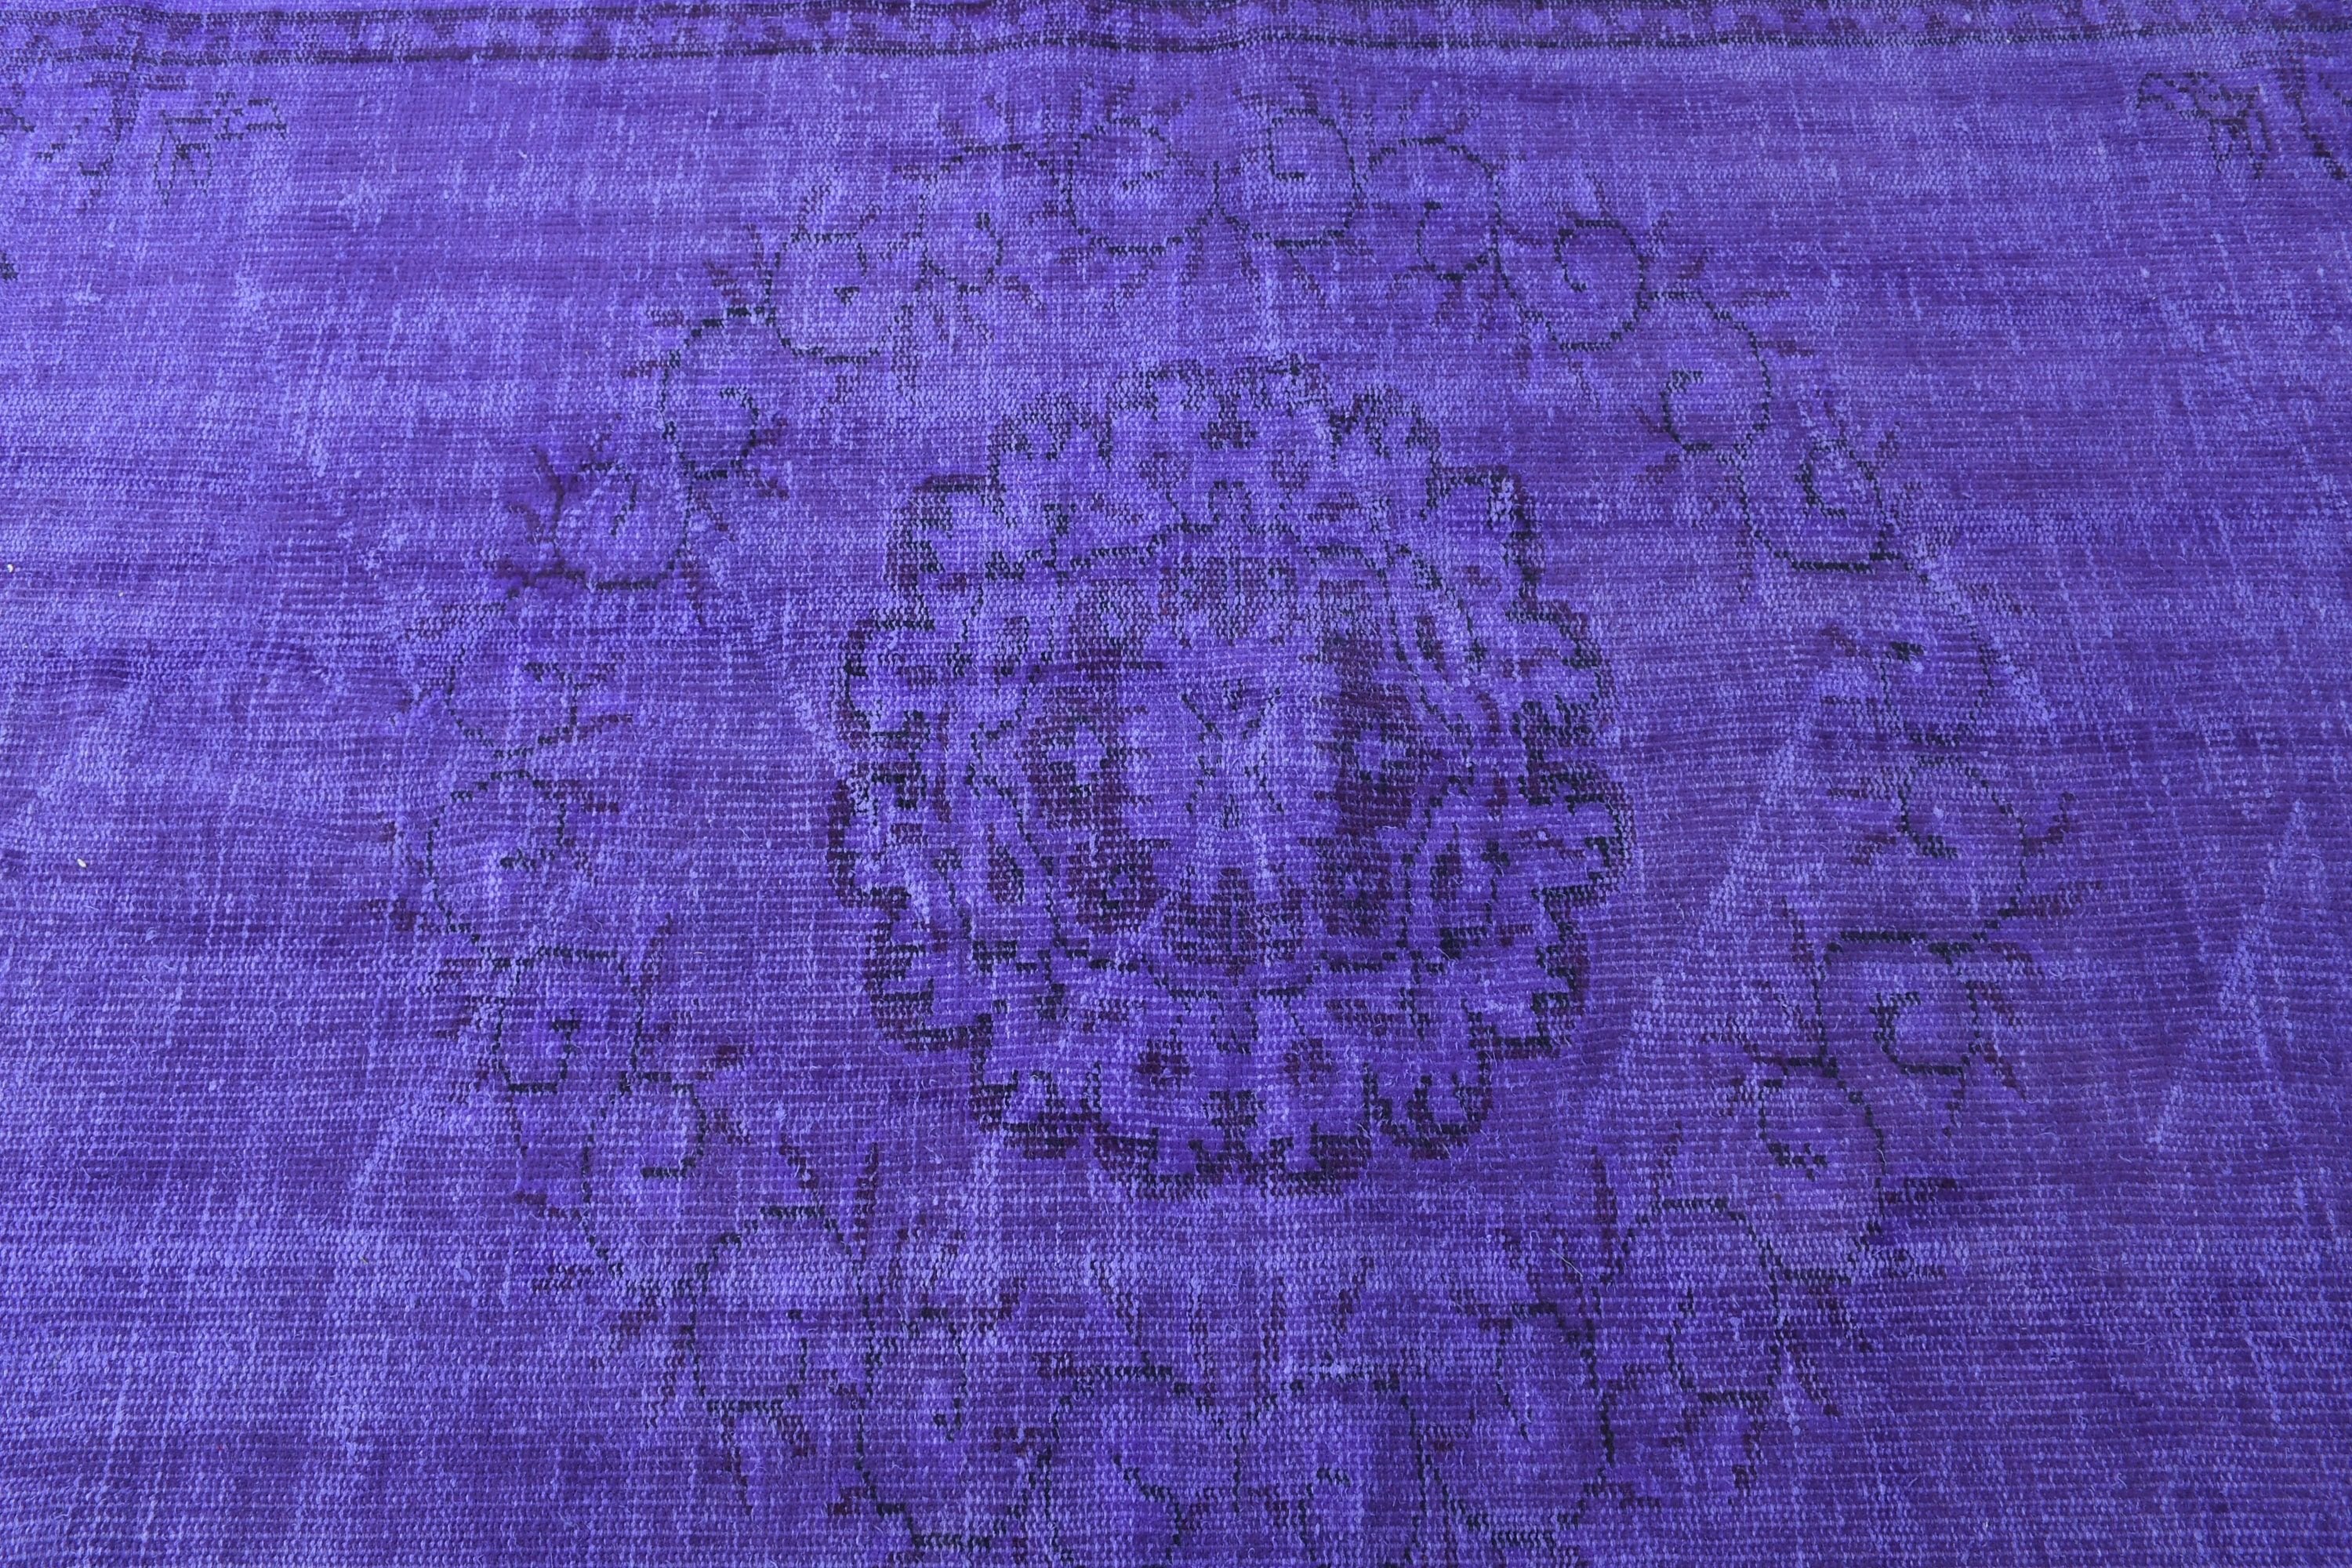 Salon Rug, Oriental Rug, 5.7x9.1 ft Large Rugs, Office Rug, Turkish Rug, Vintage Rug, Purple Home Decor Rugs, Bedroom Rugs, Anatolian Rug